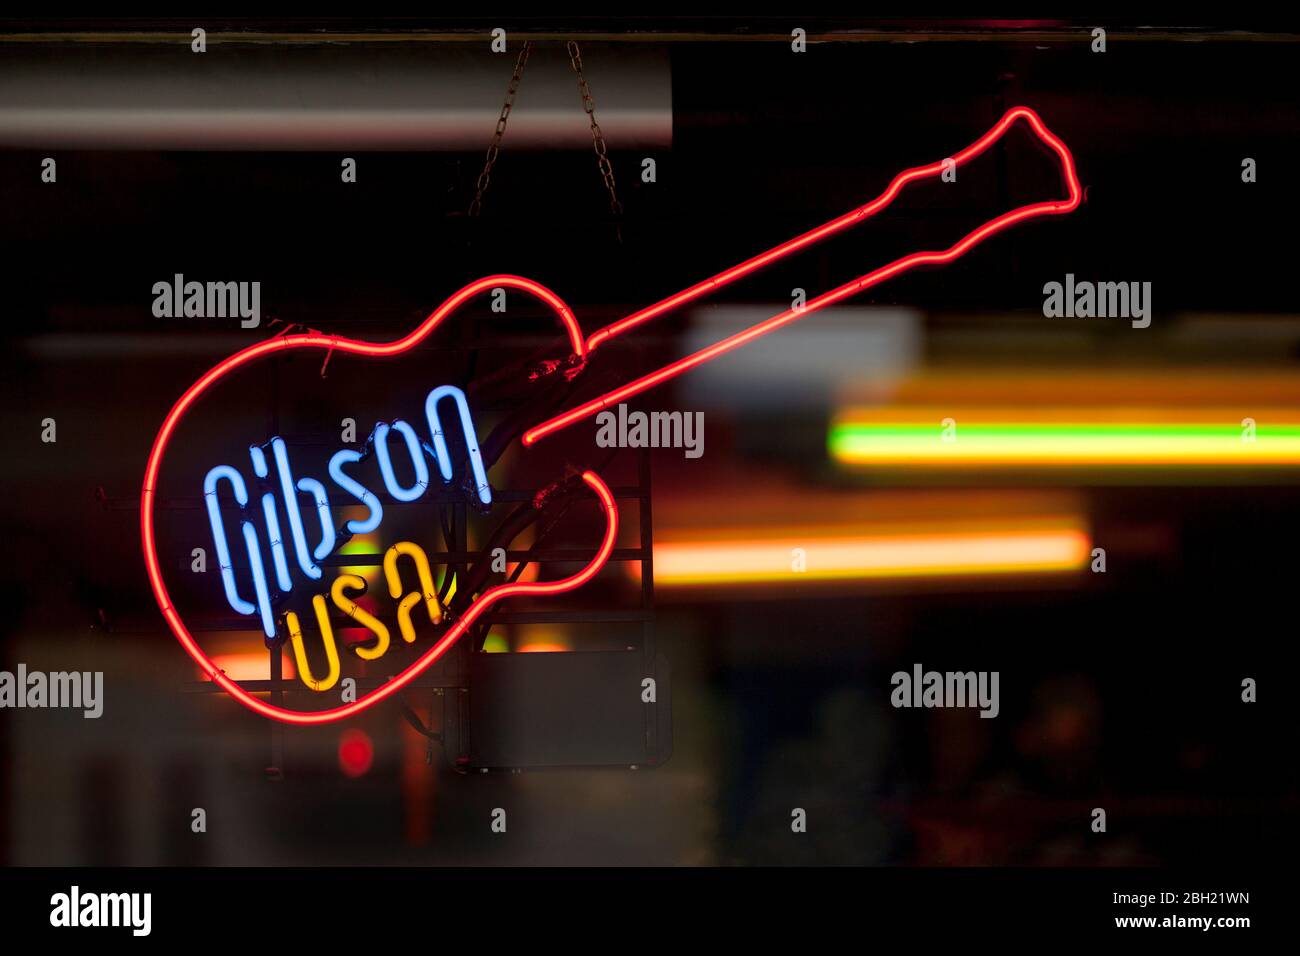 Nahaufnahme auf einem Neonlicht in Form einer Gitarre mit innen 'Gibson USA' geschrieben. Stockfoto